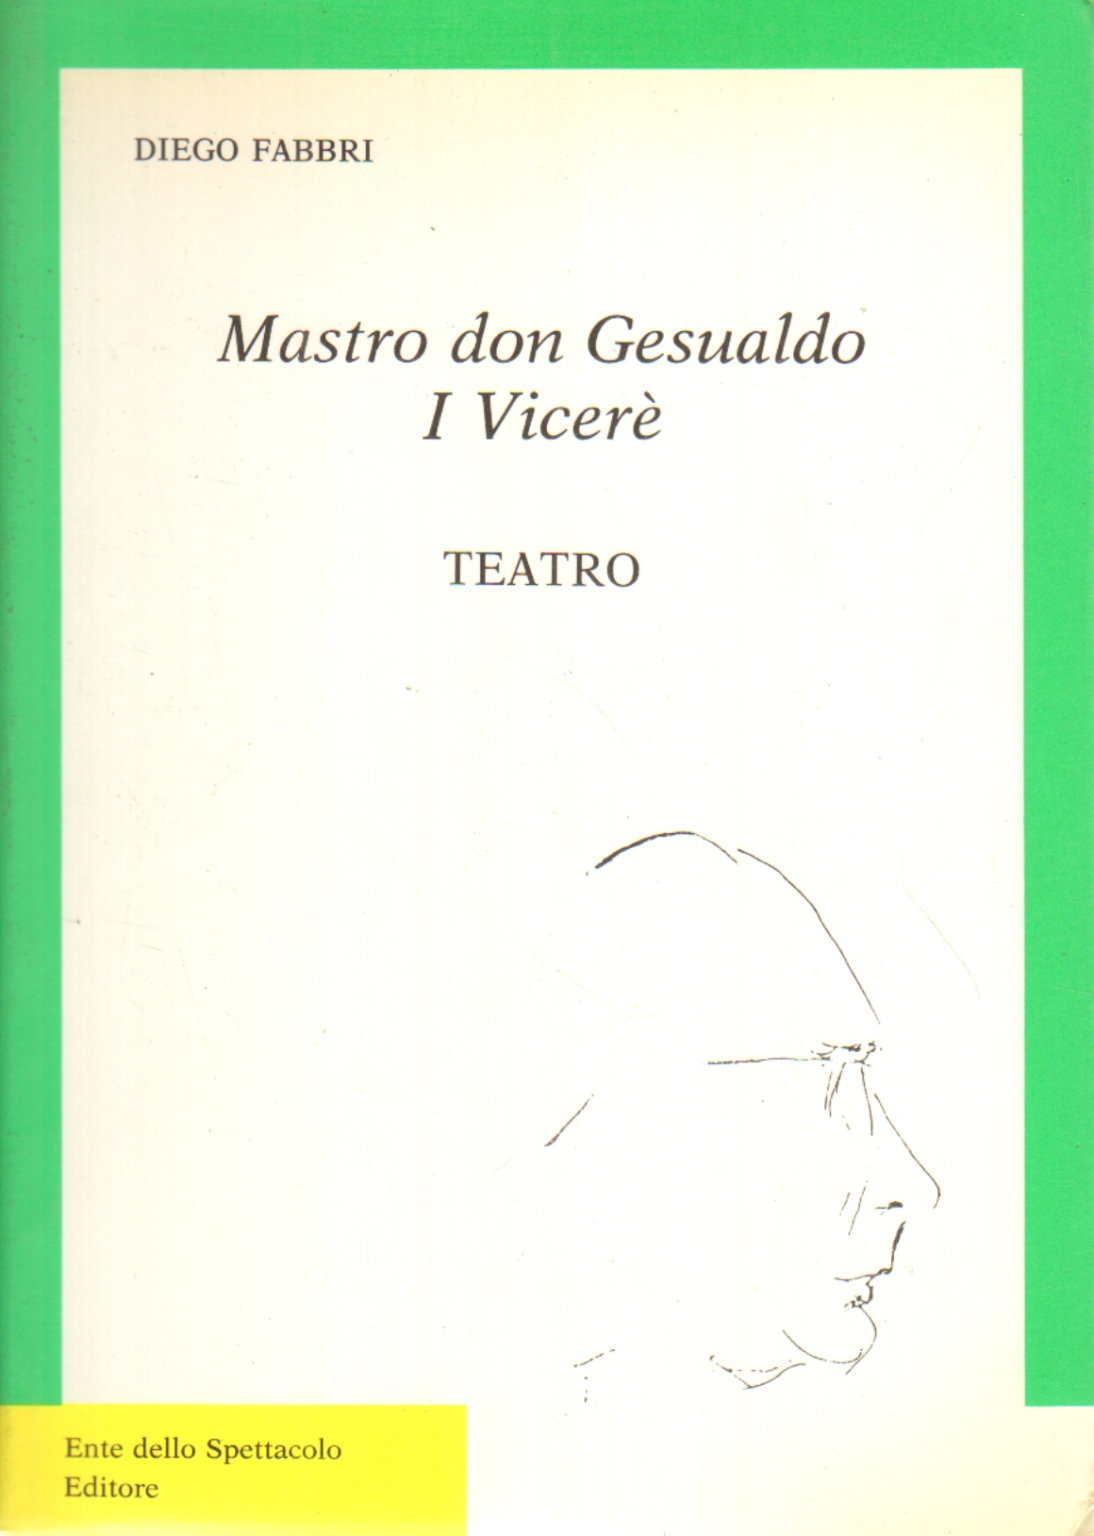 Mastro don Gesualdo. Le Vice-Roi, Diego Fabbri